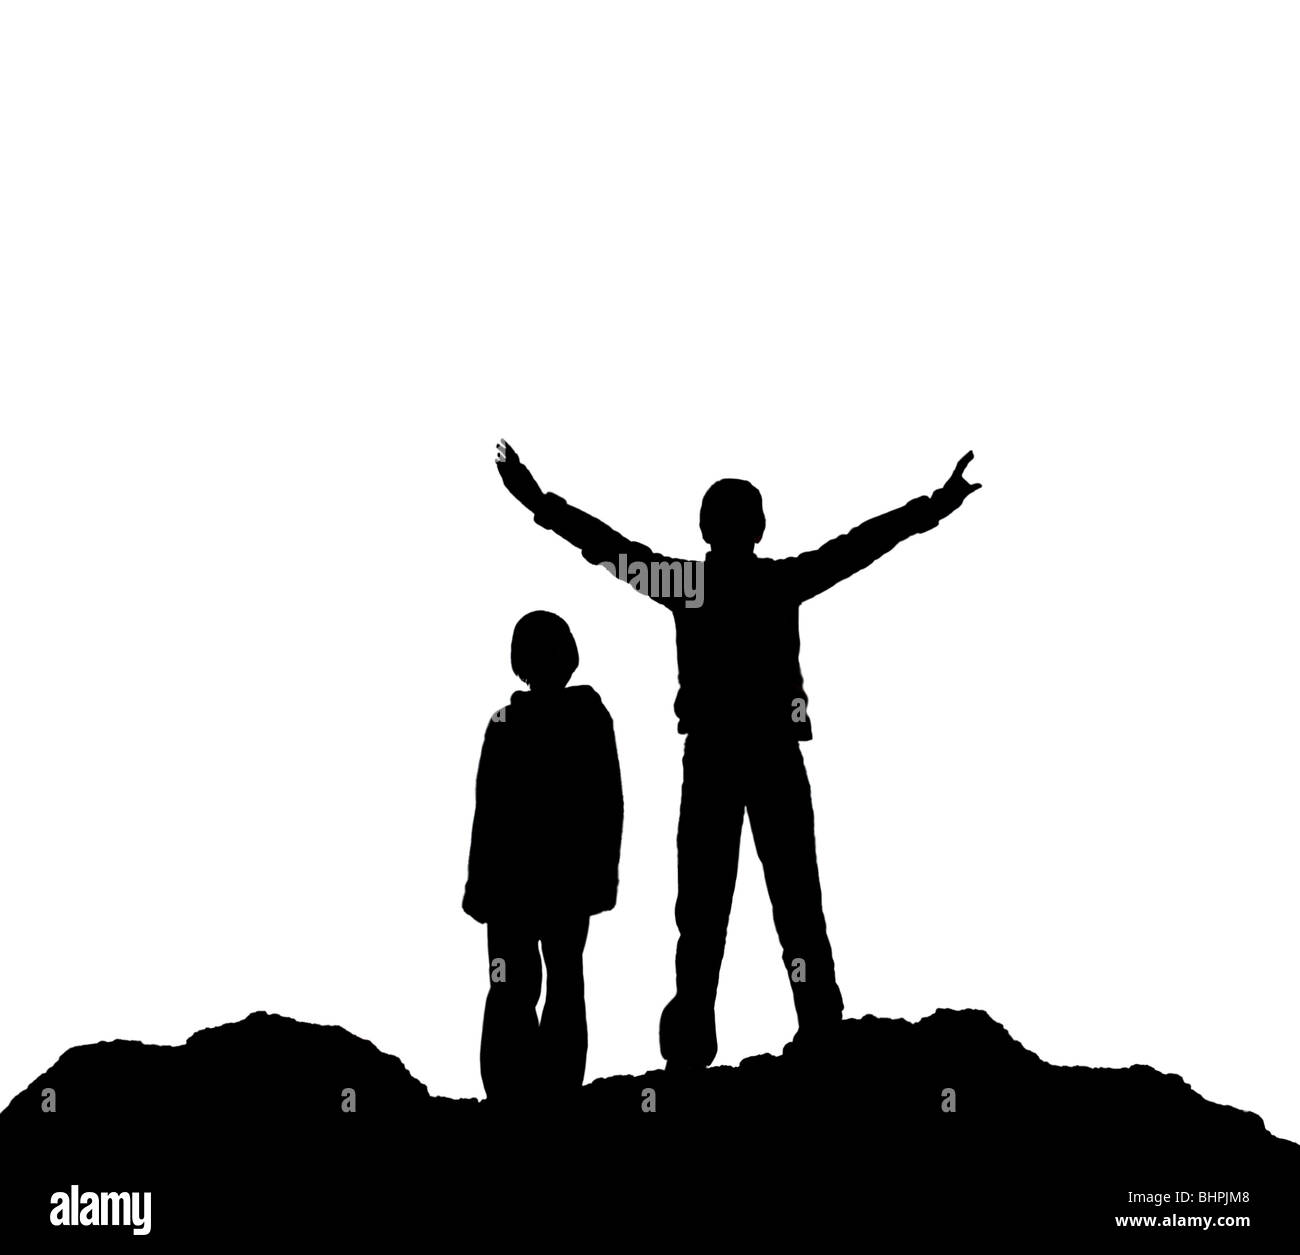 Silhouette di due bambini, uno con le braccia aperte, in piedi su un terreno accidentato contro uno sfondo bianco - Foto Stock